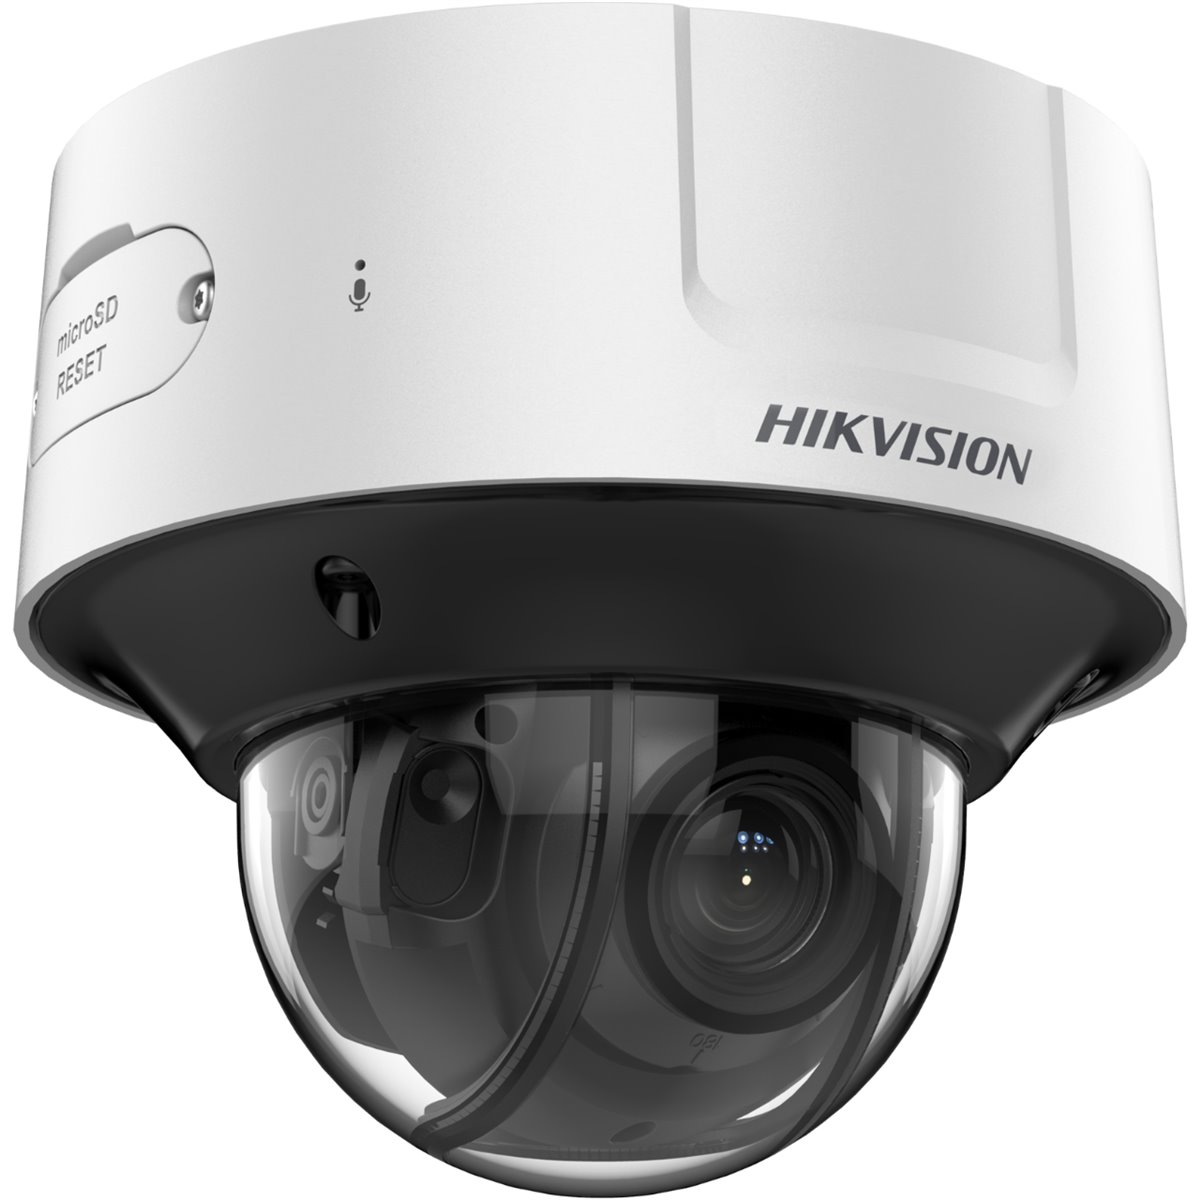 Hikvision IDS-2CD7546G0-IZHSY(8-32MM)(C)